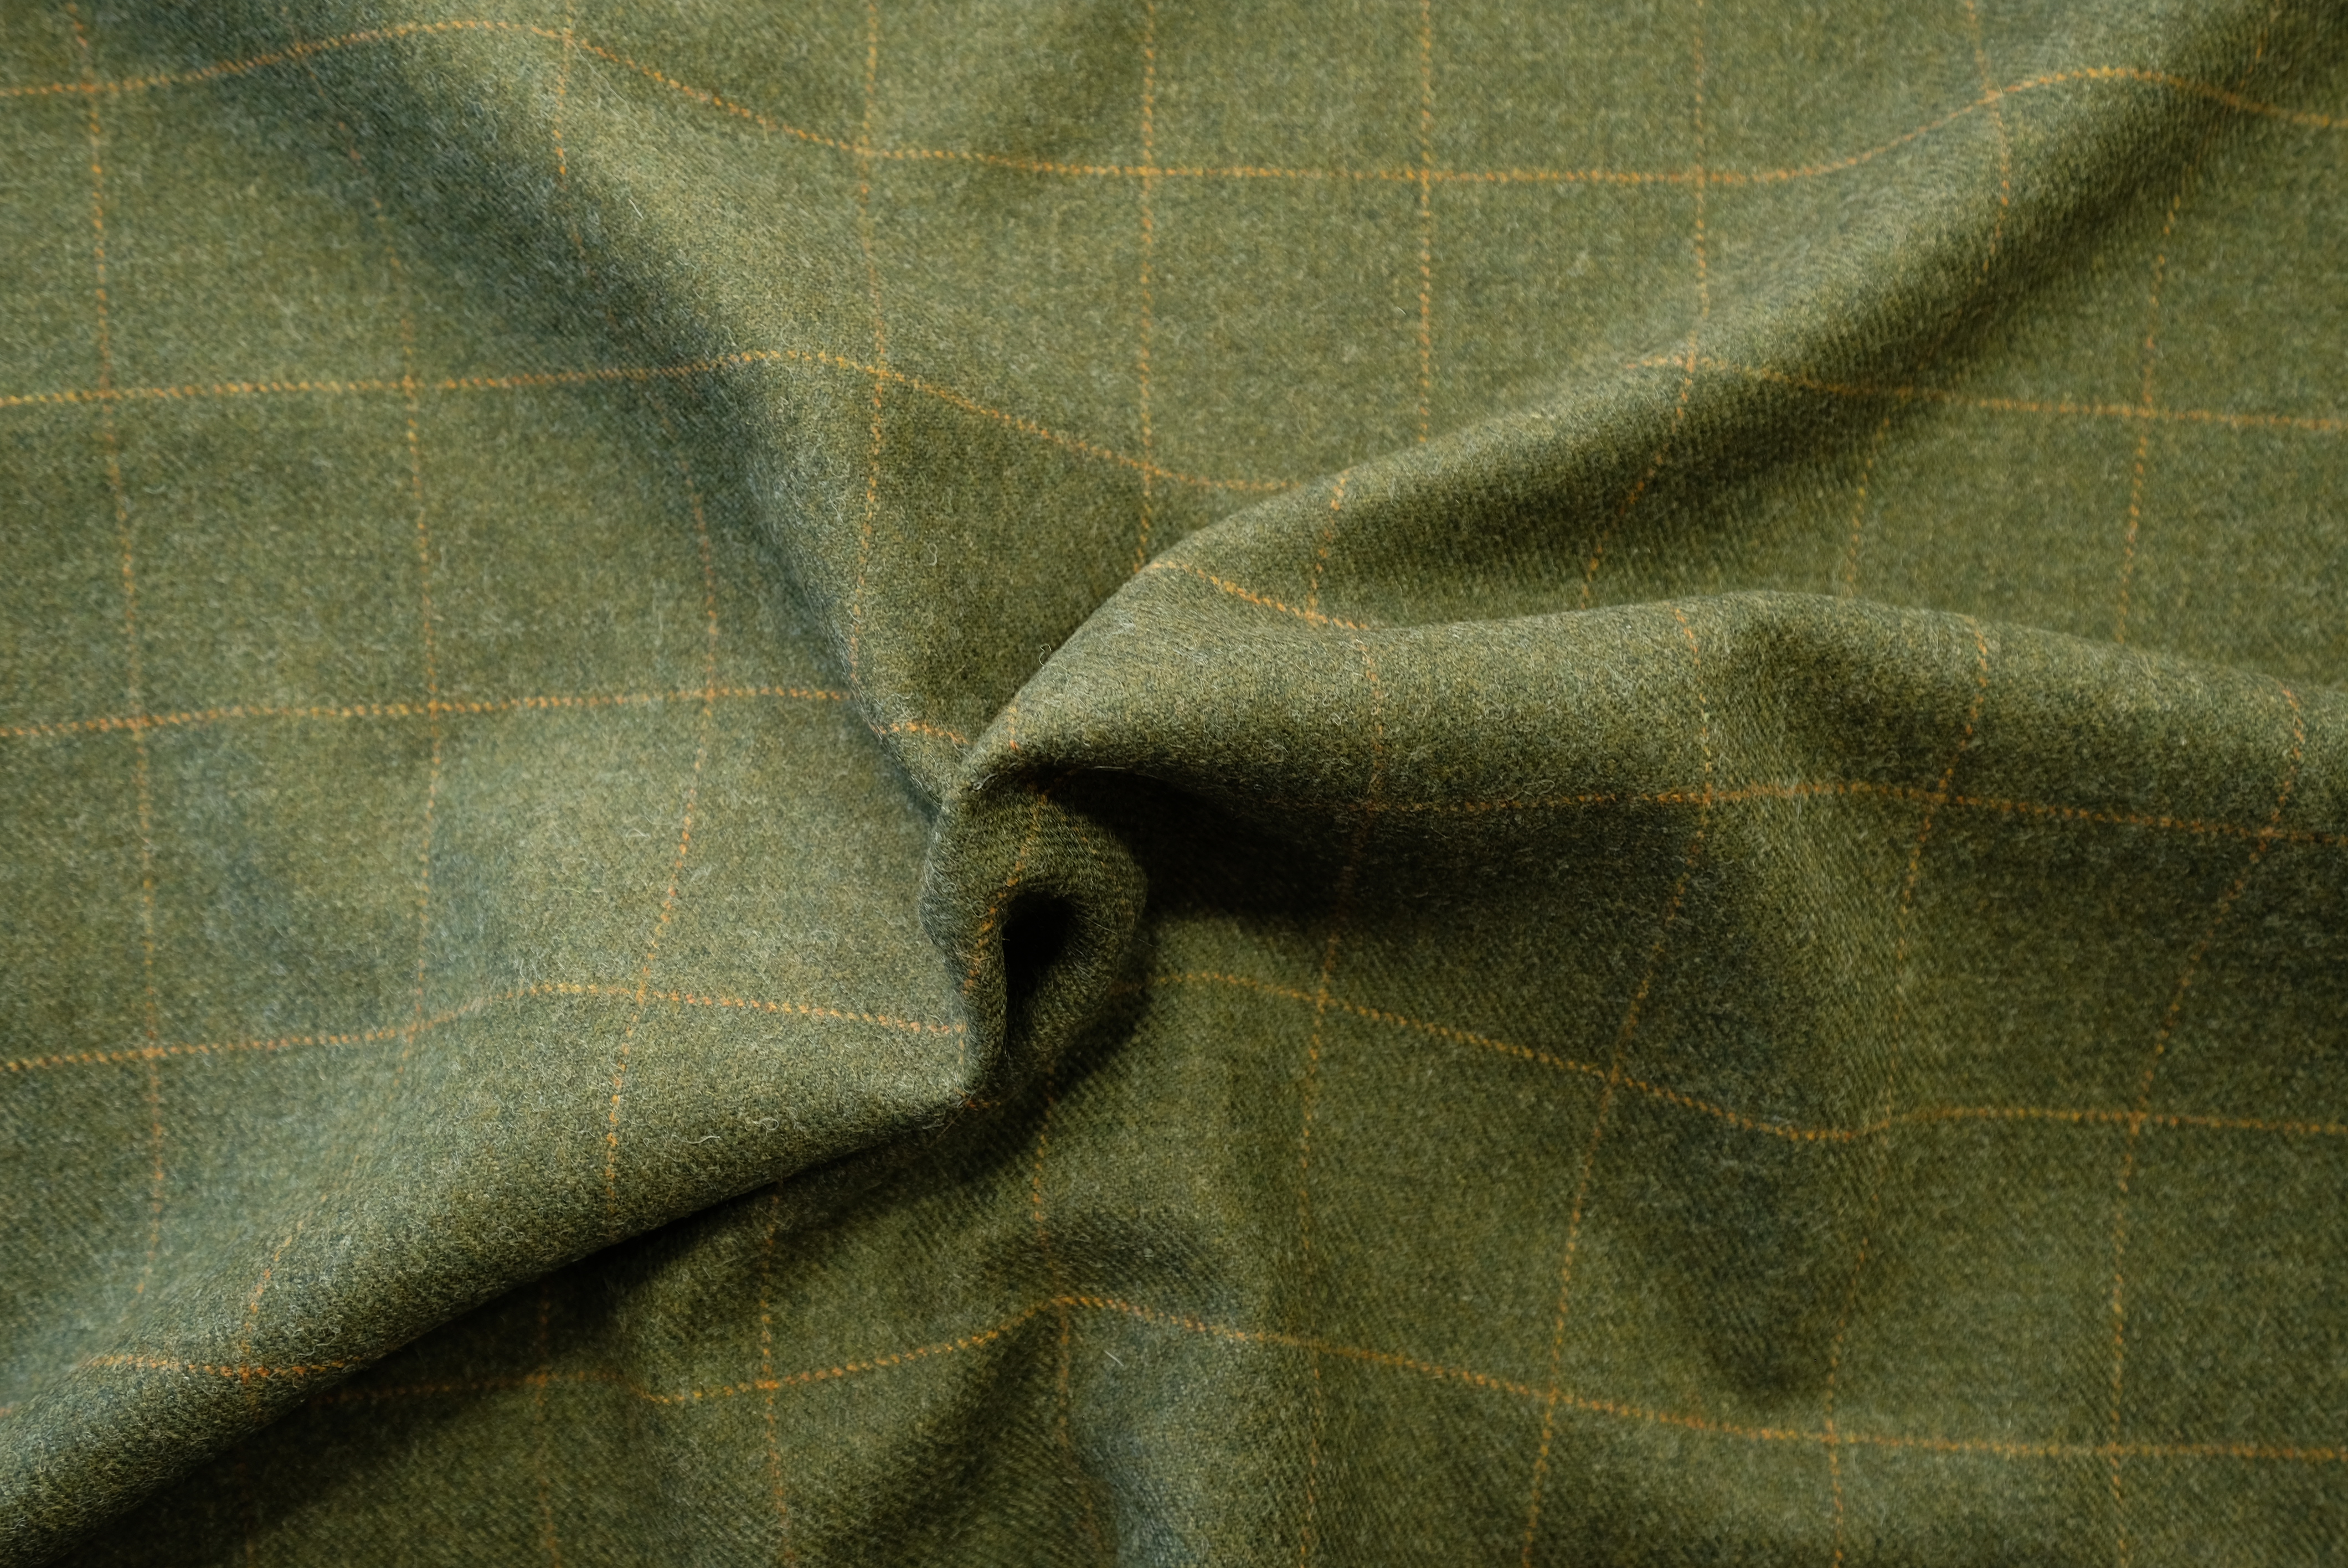 TWEED tartan wool fabric- green with yellow 23